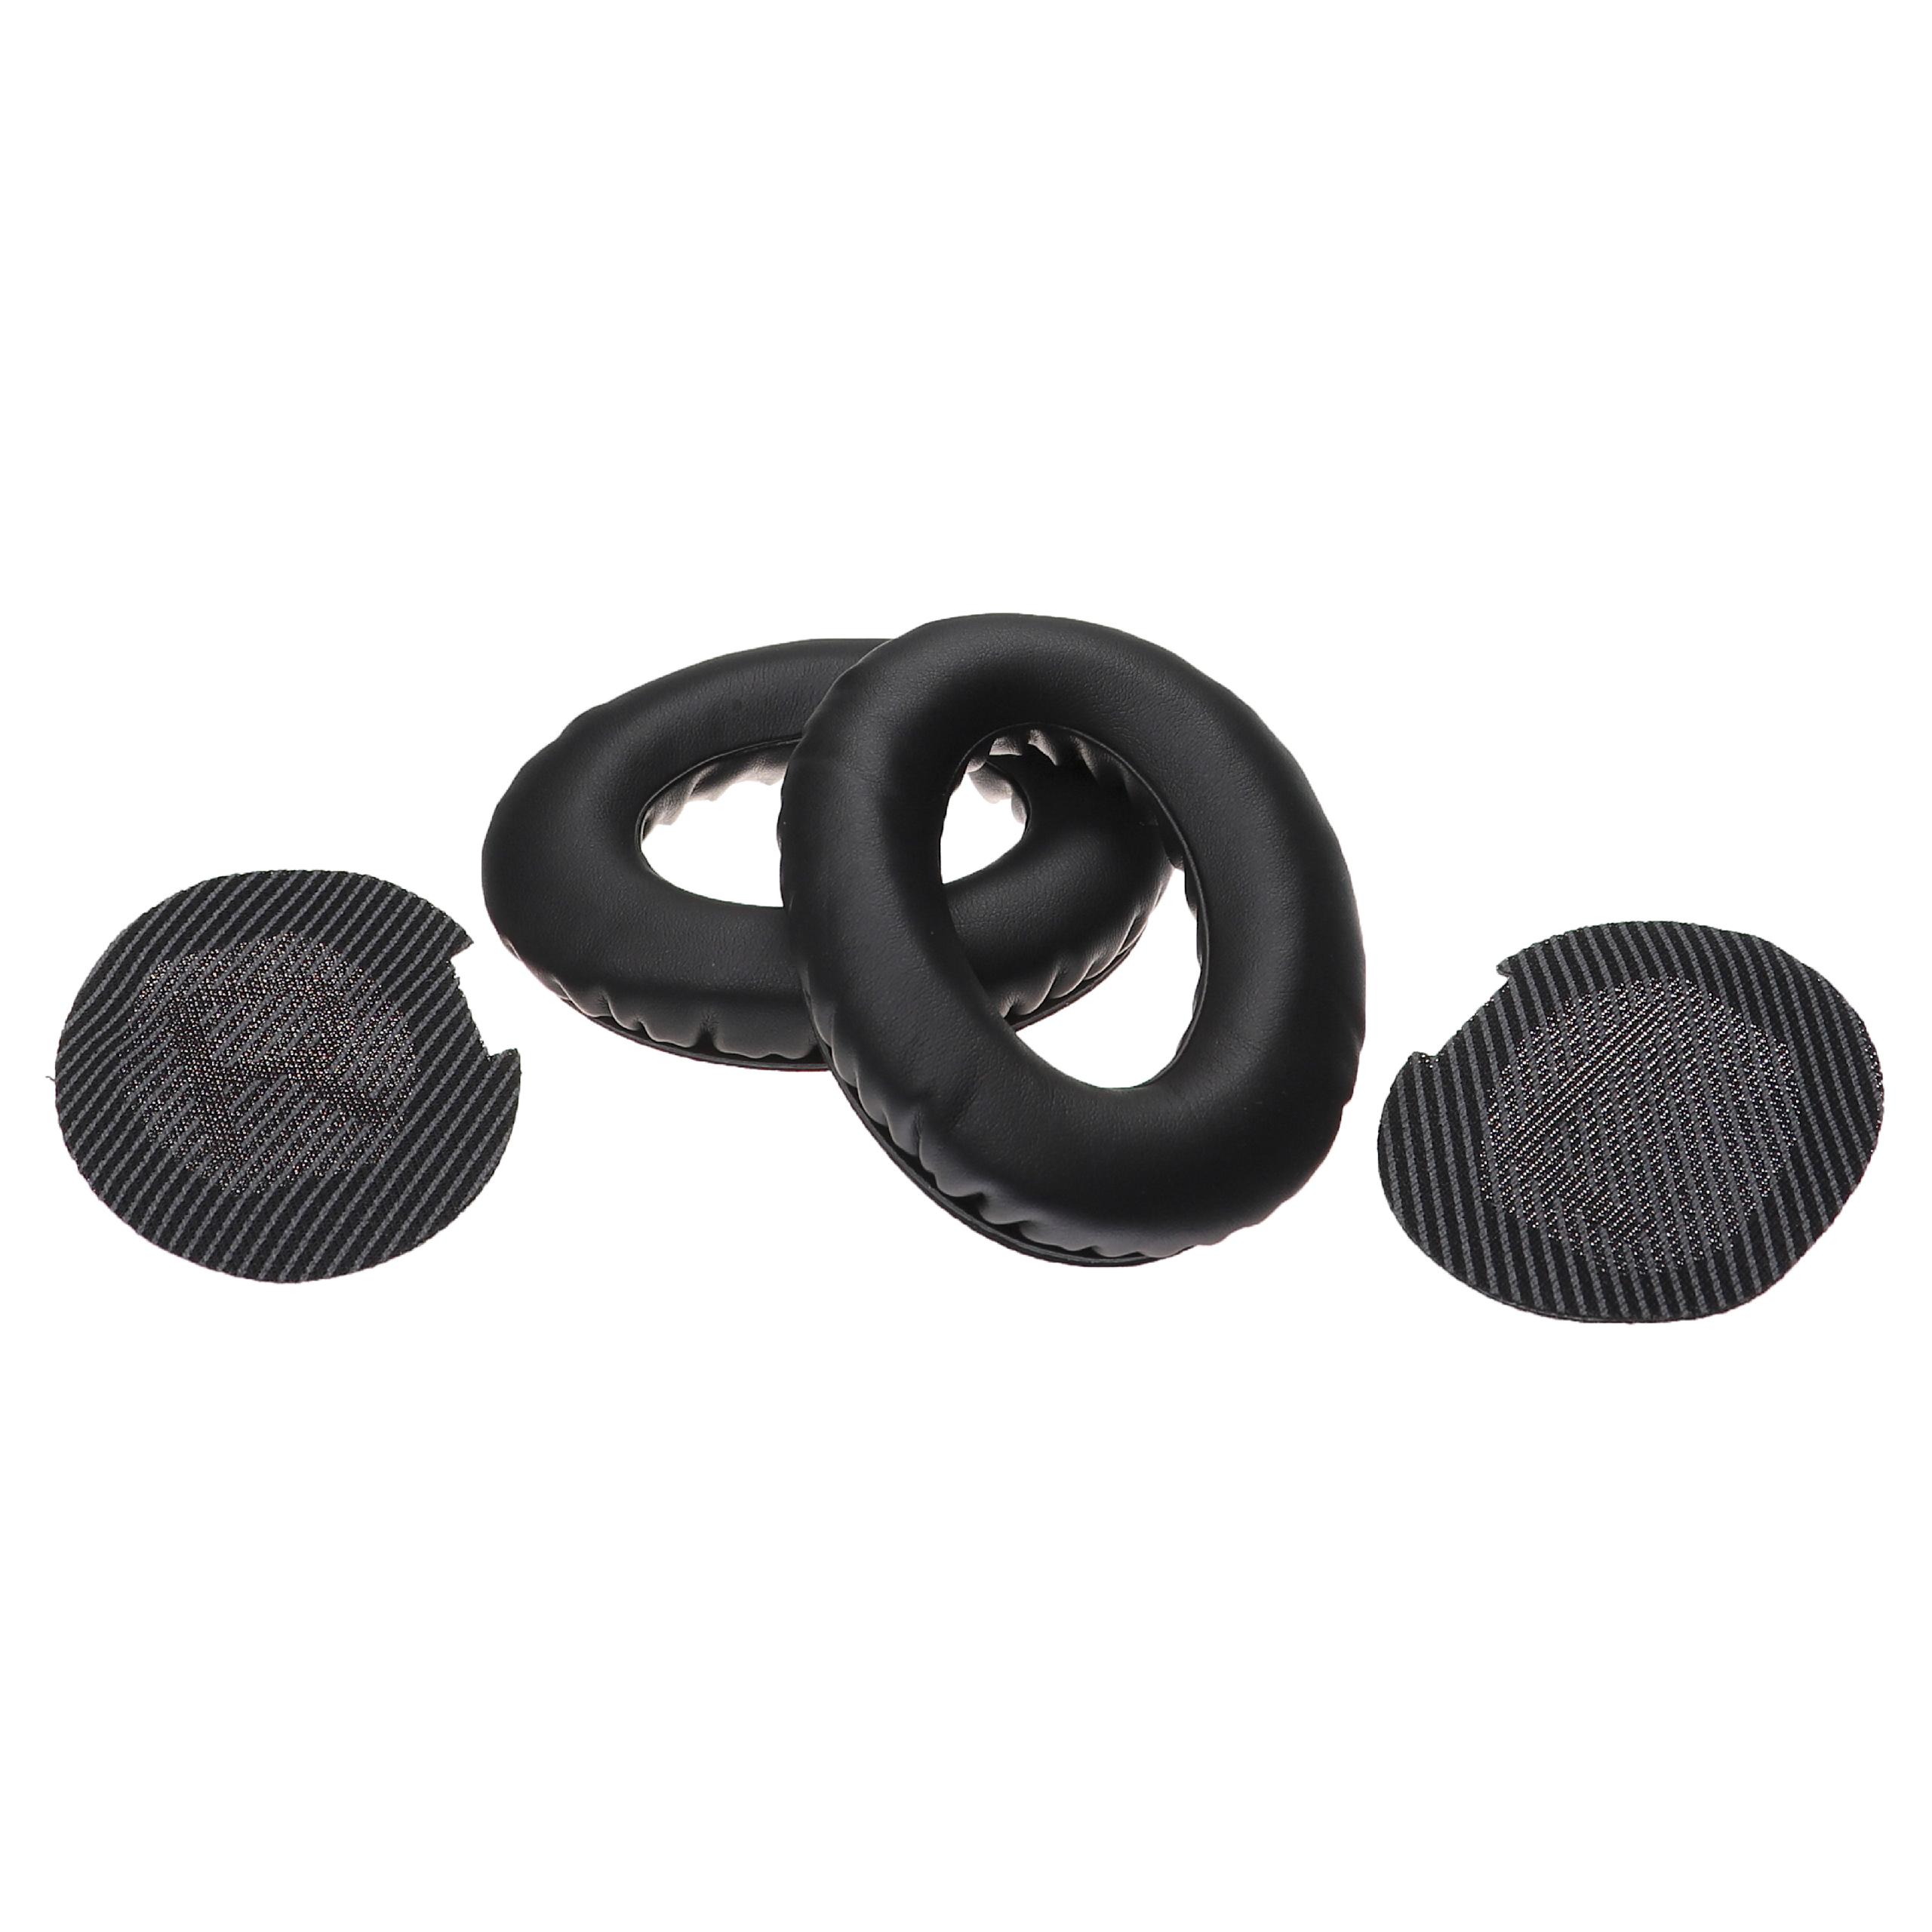 Ohrenpolster passend für Bose AE2 Kopfhörer u.a. - Mit Memory-Schaum, Weiches Material, 9,5 x 7,5 cm, 41 mm st